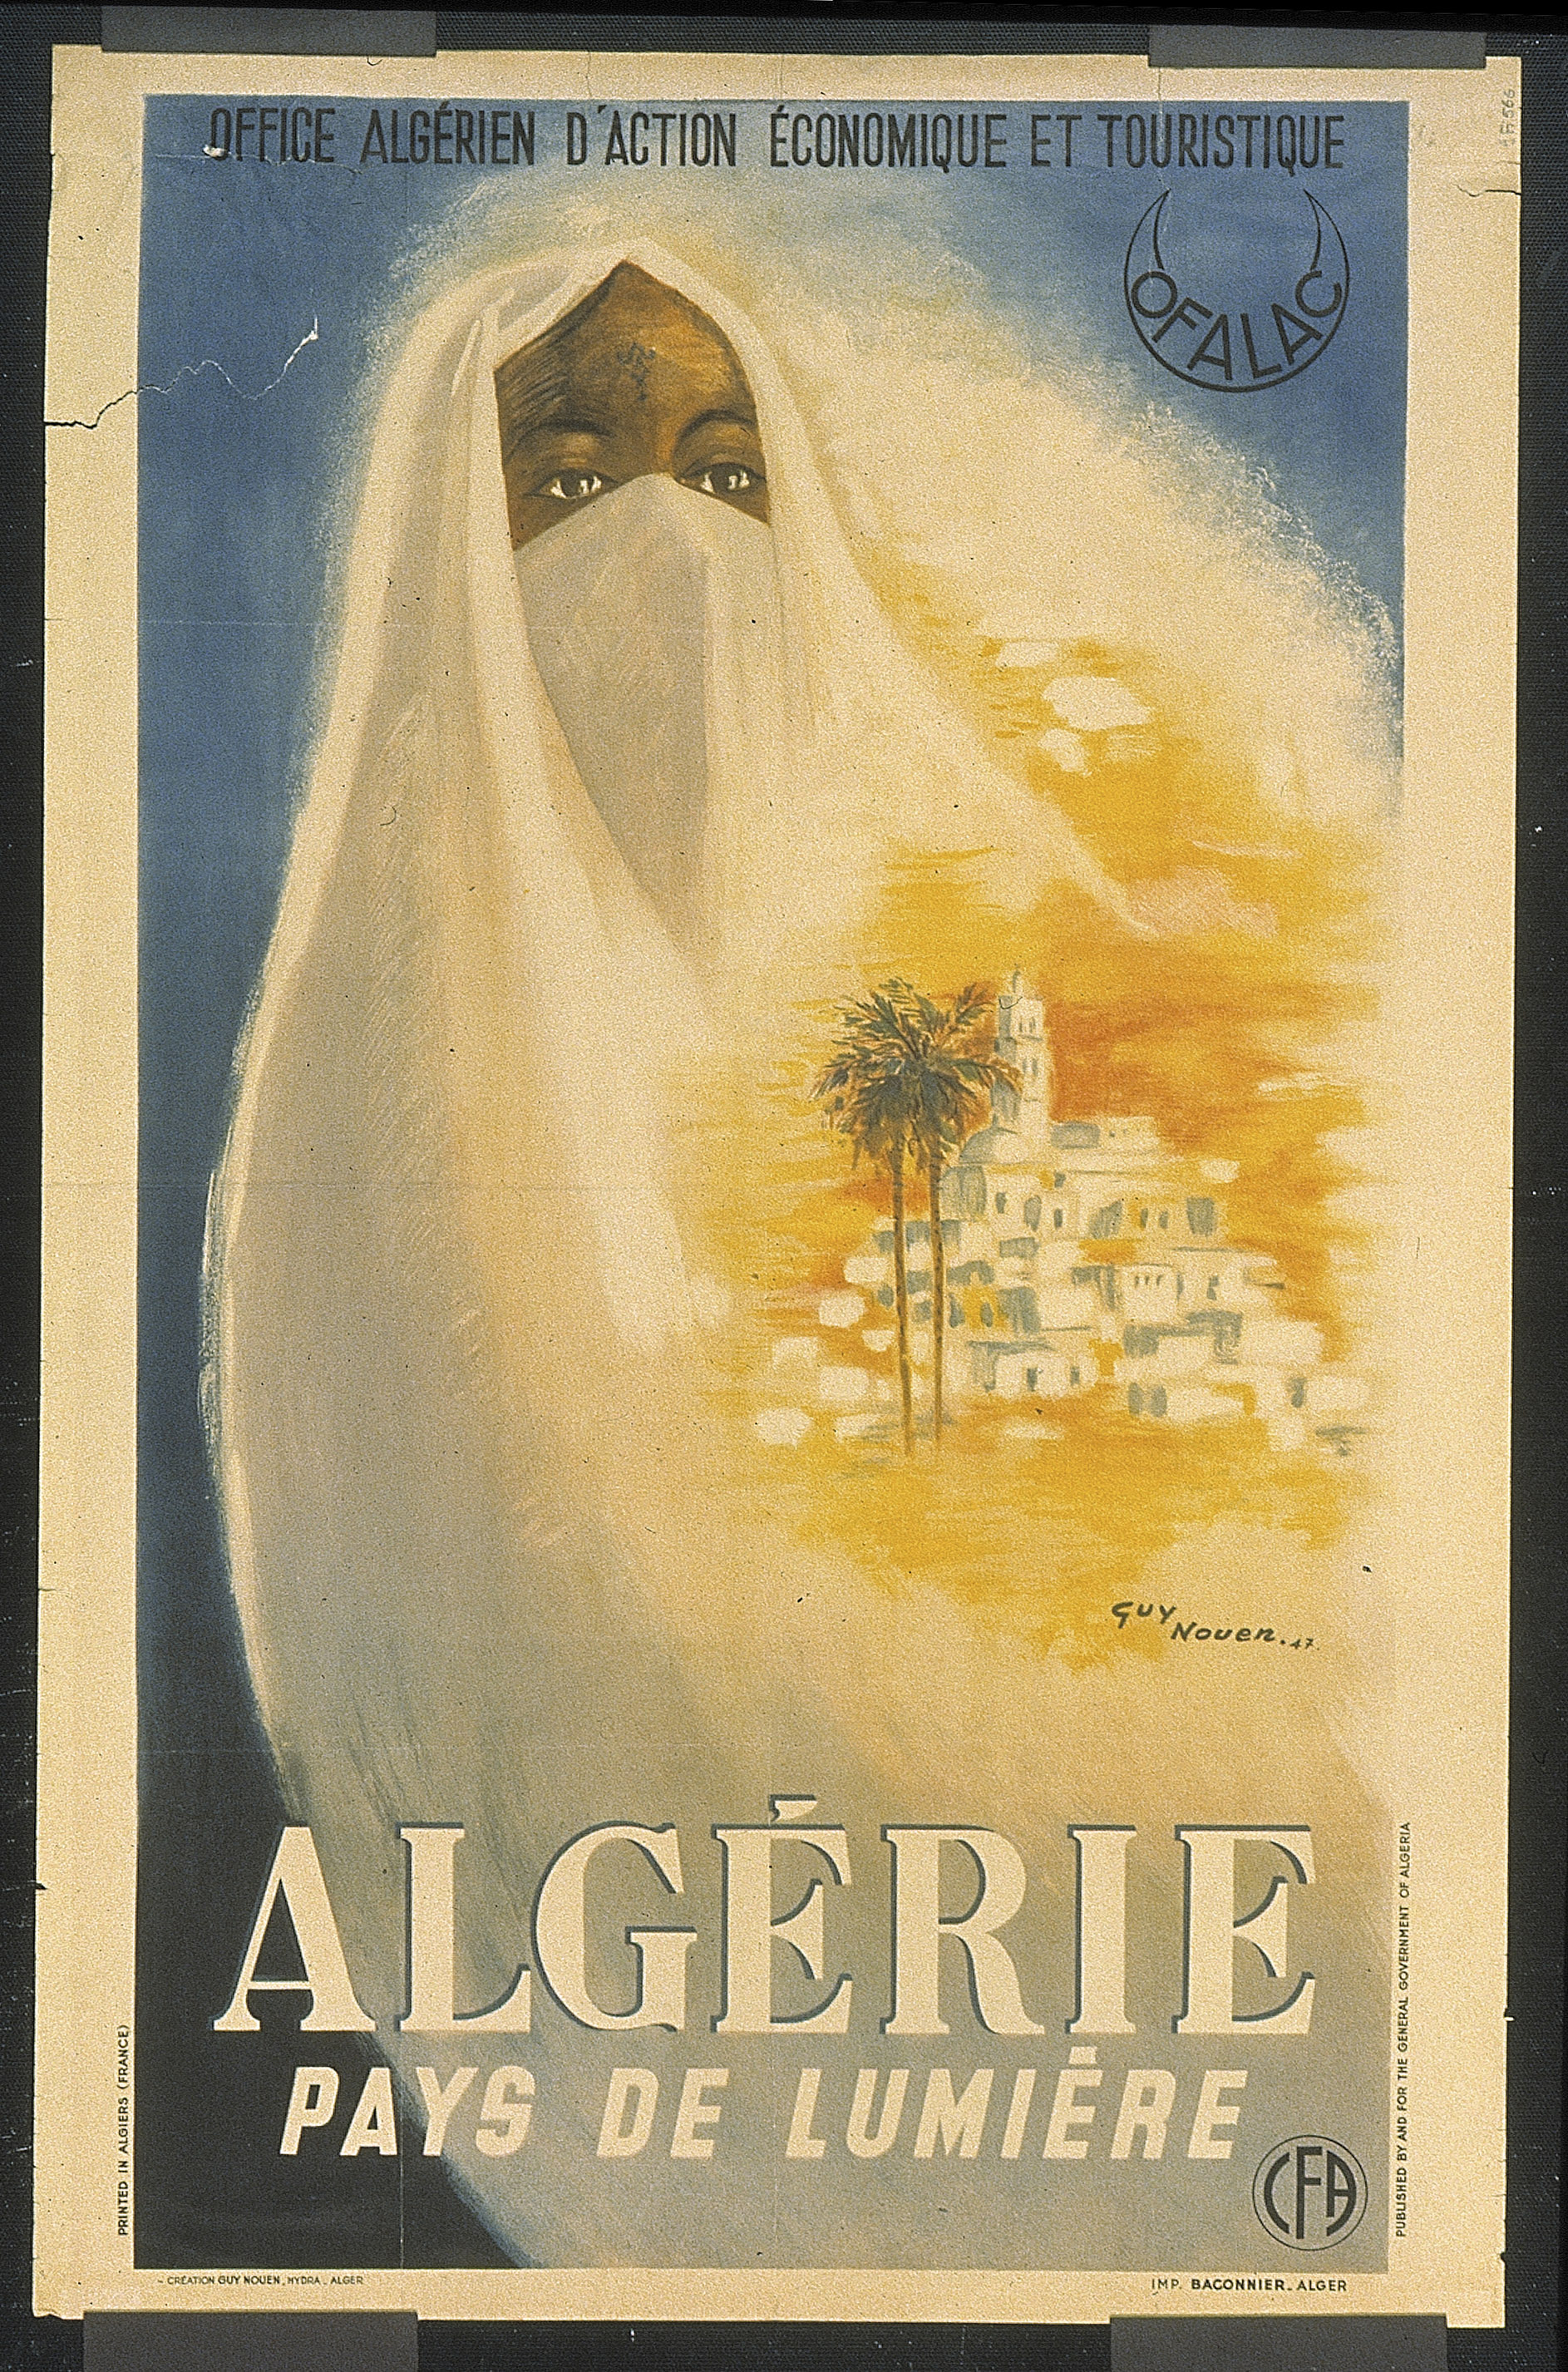 Nouen, Guy, Office algérien d'action économique et touristique (OFALAC). Algérie pays de lumière, Alger, Imprimerie Baconnier, 1947